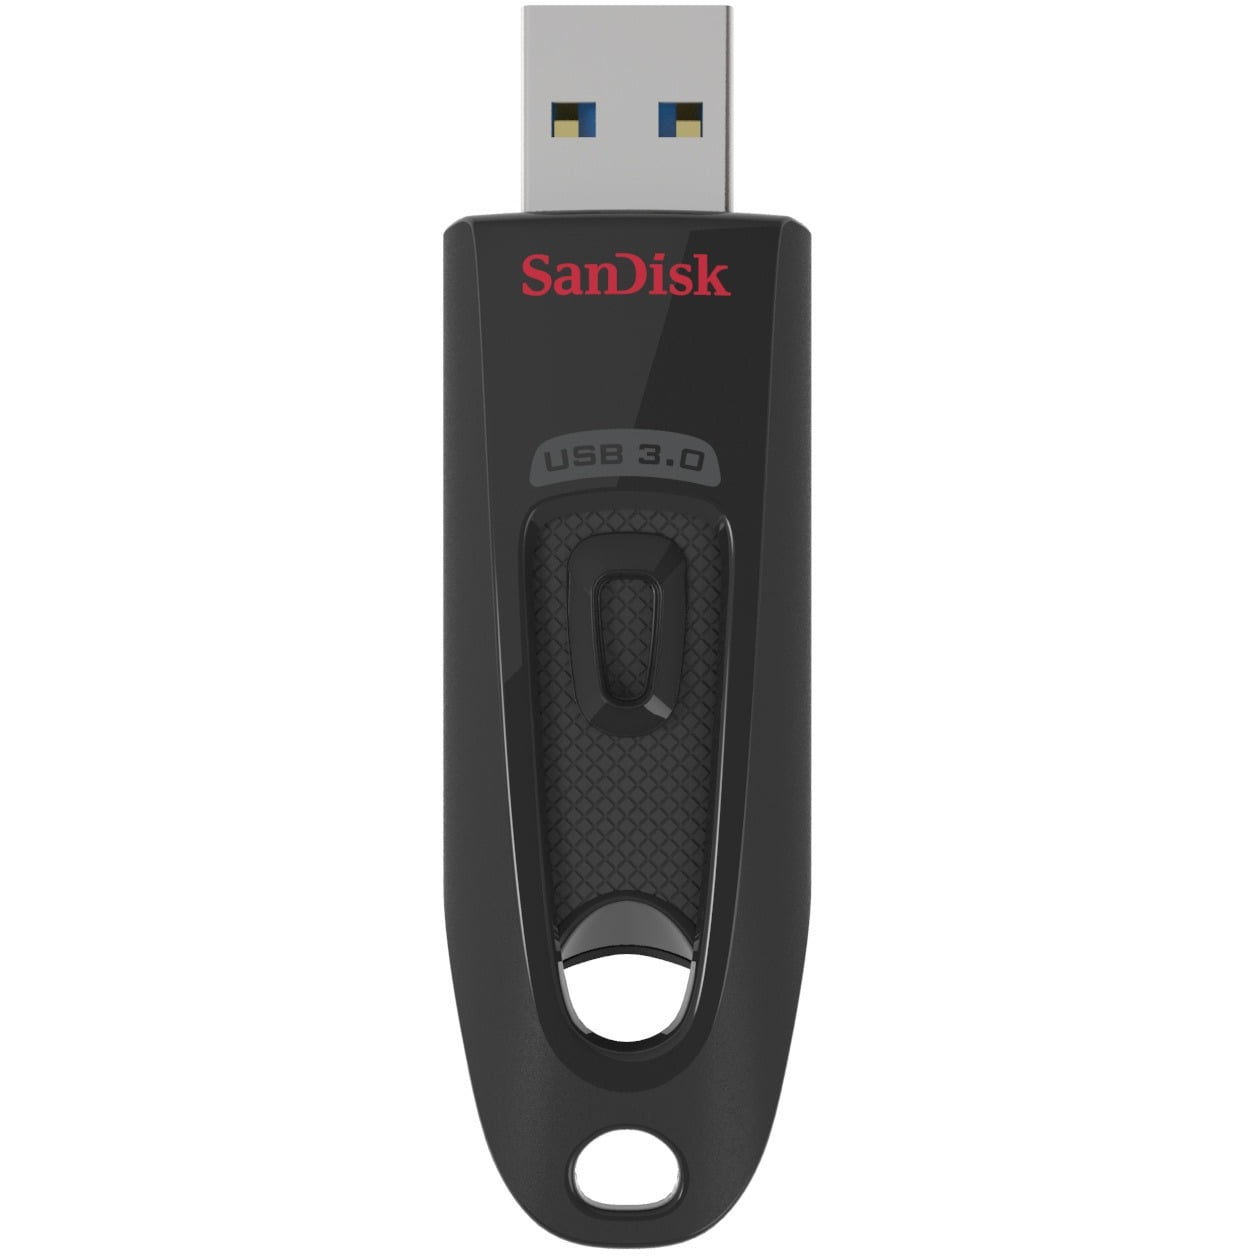  SanDisk - SDCZ48-064G-UAM46 64GB Ultra USB 3.0 Flash Drive -  SDCZ48-064G-UAM46 Black : Everything Else